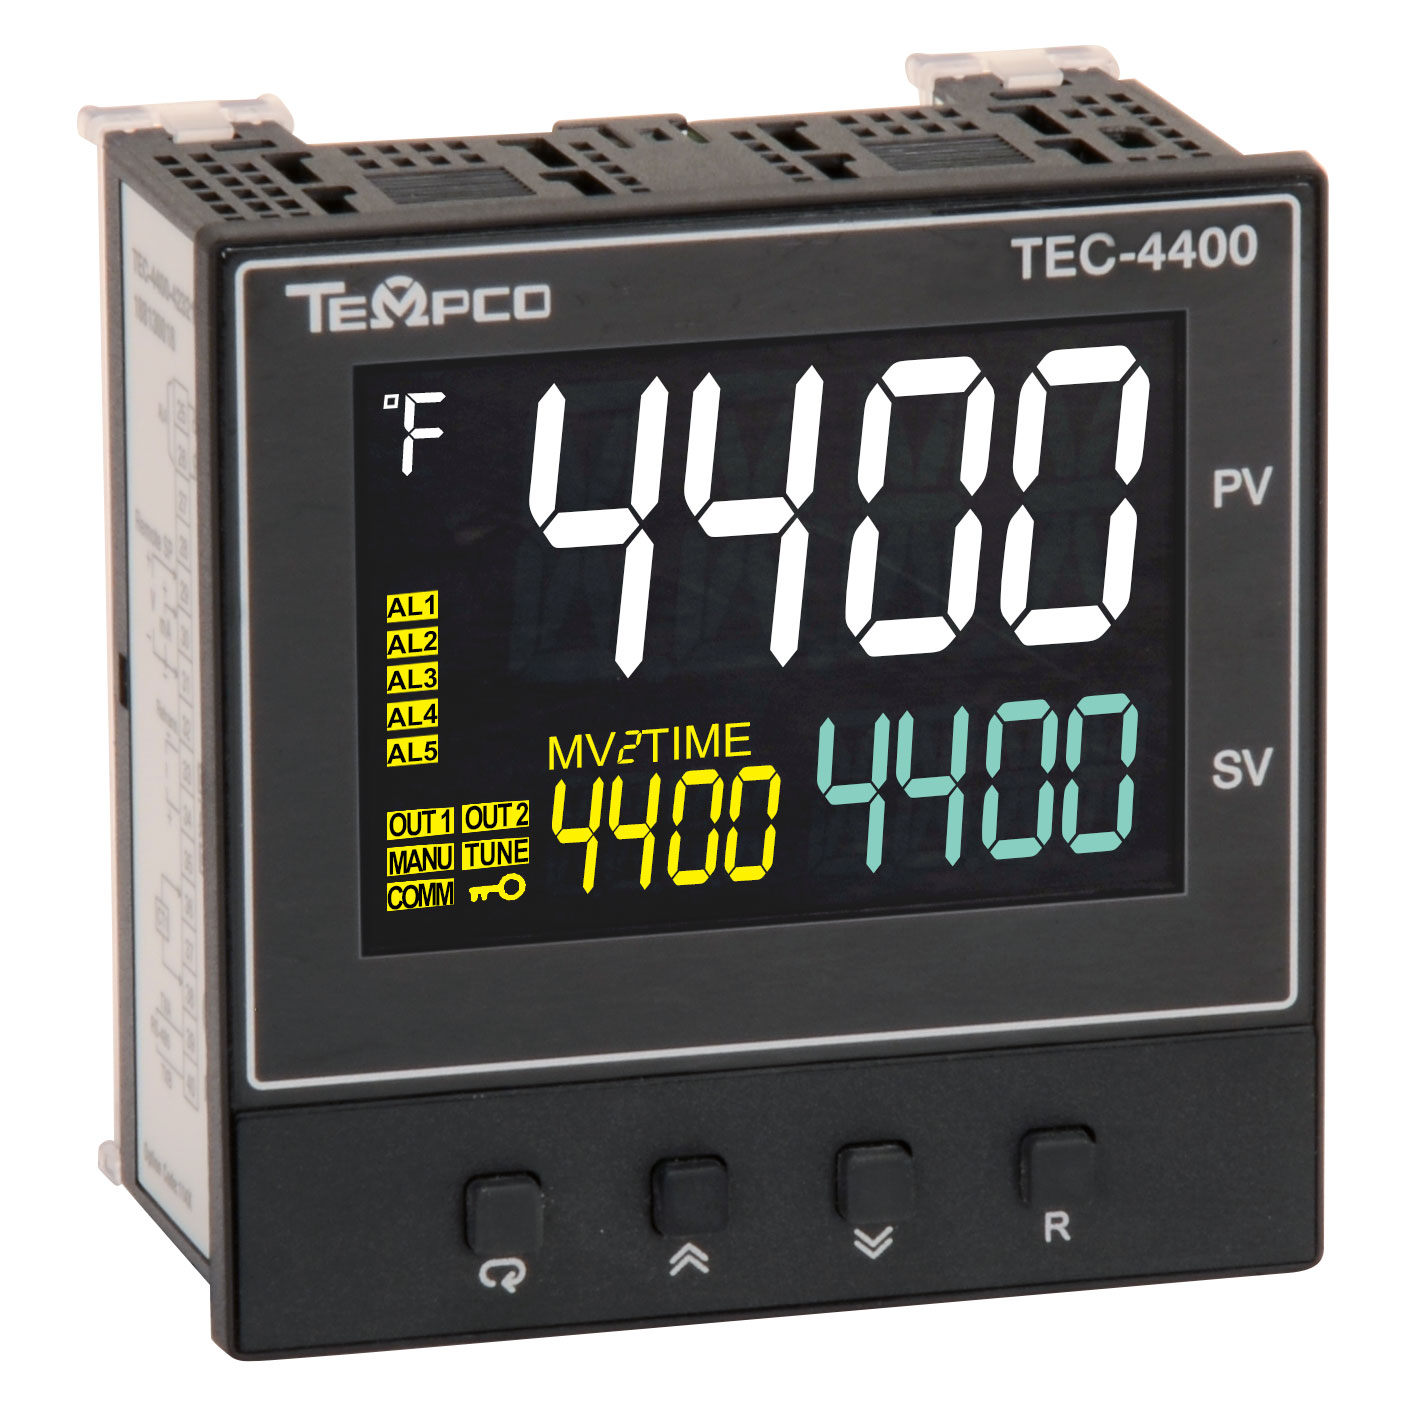 TEC-4400 Controller